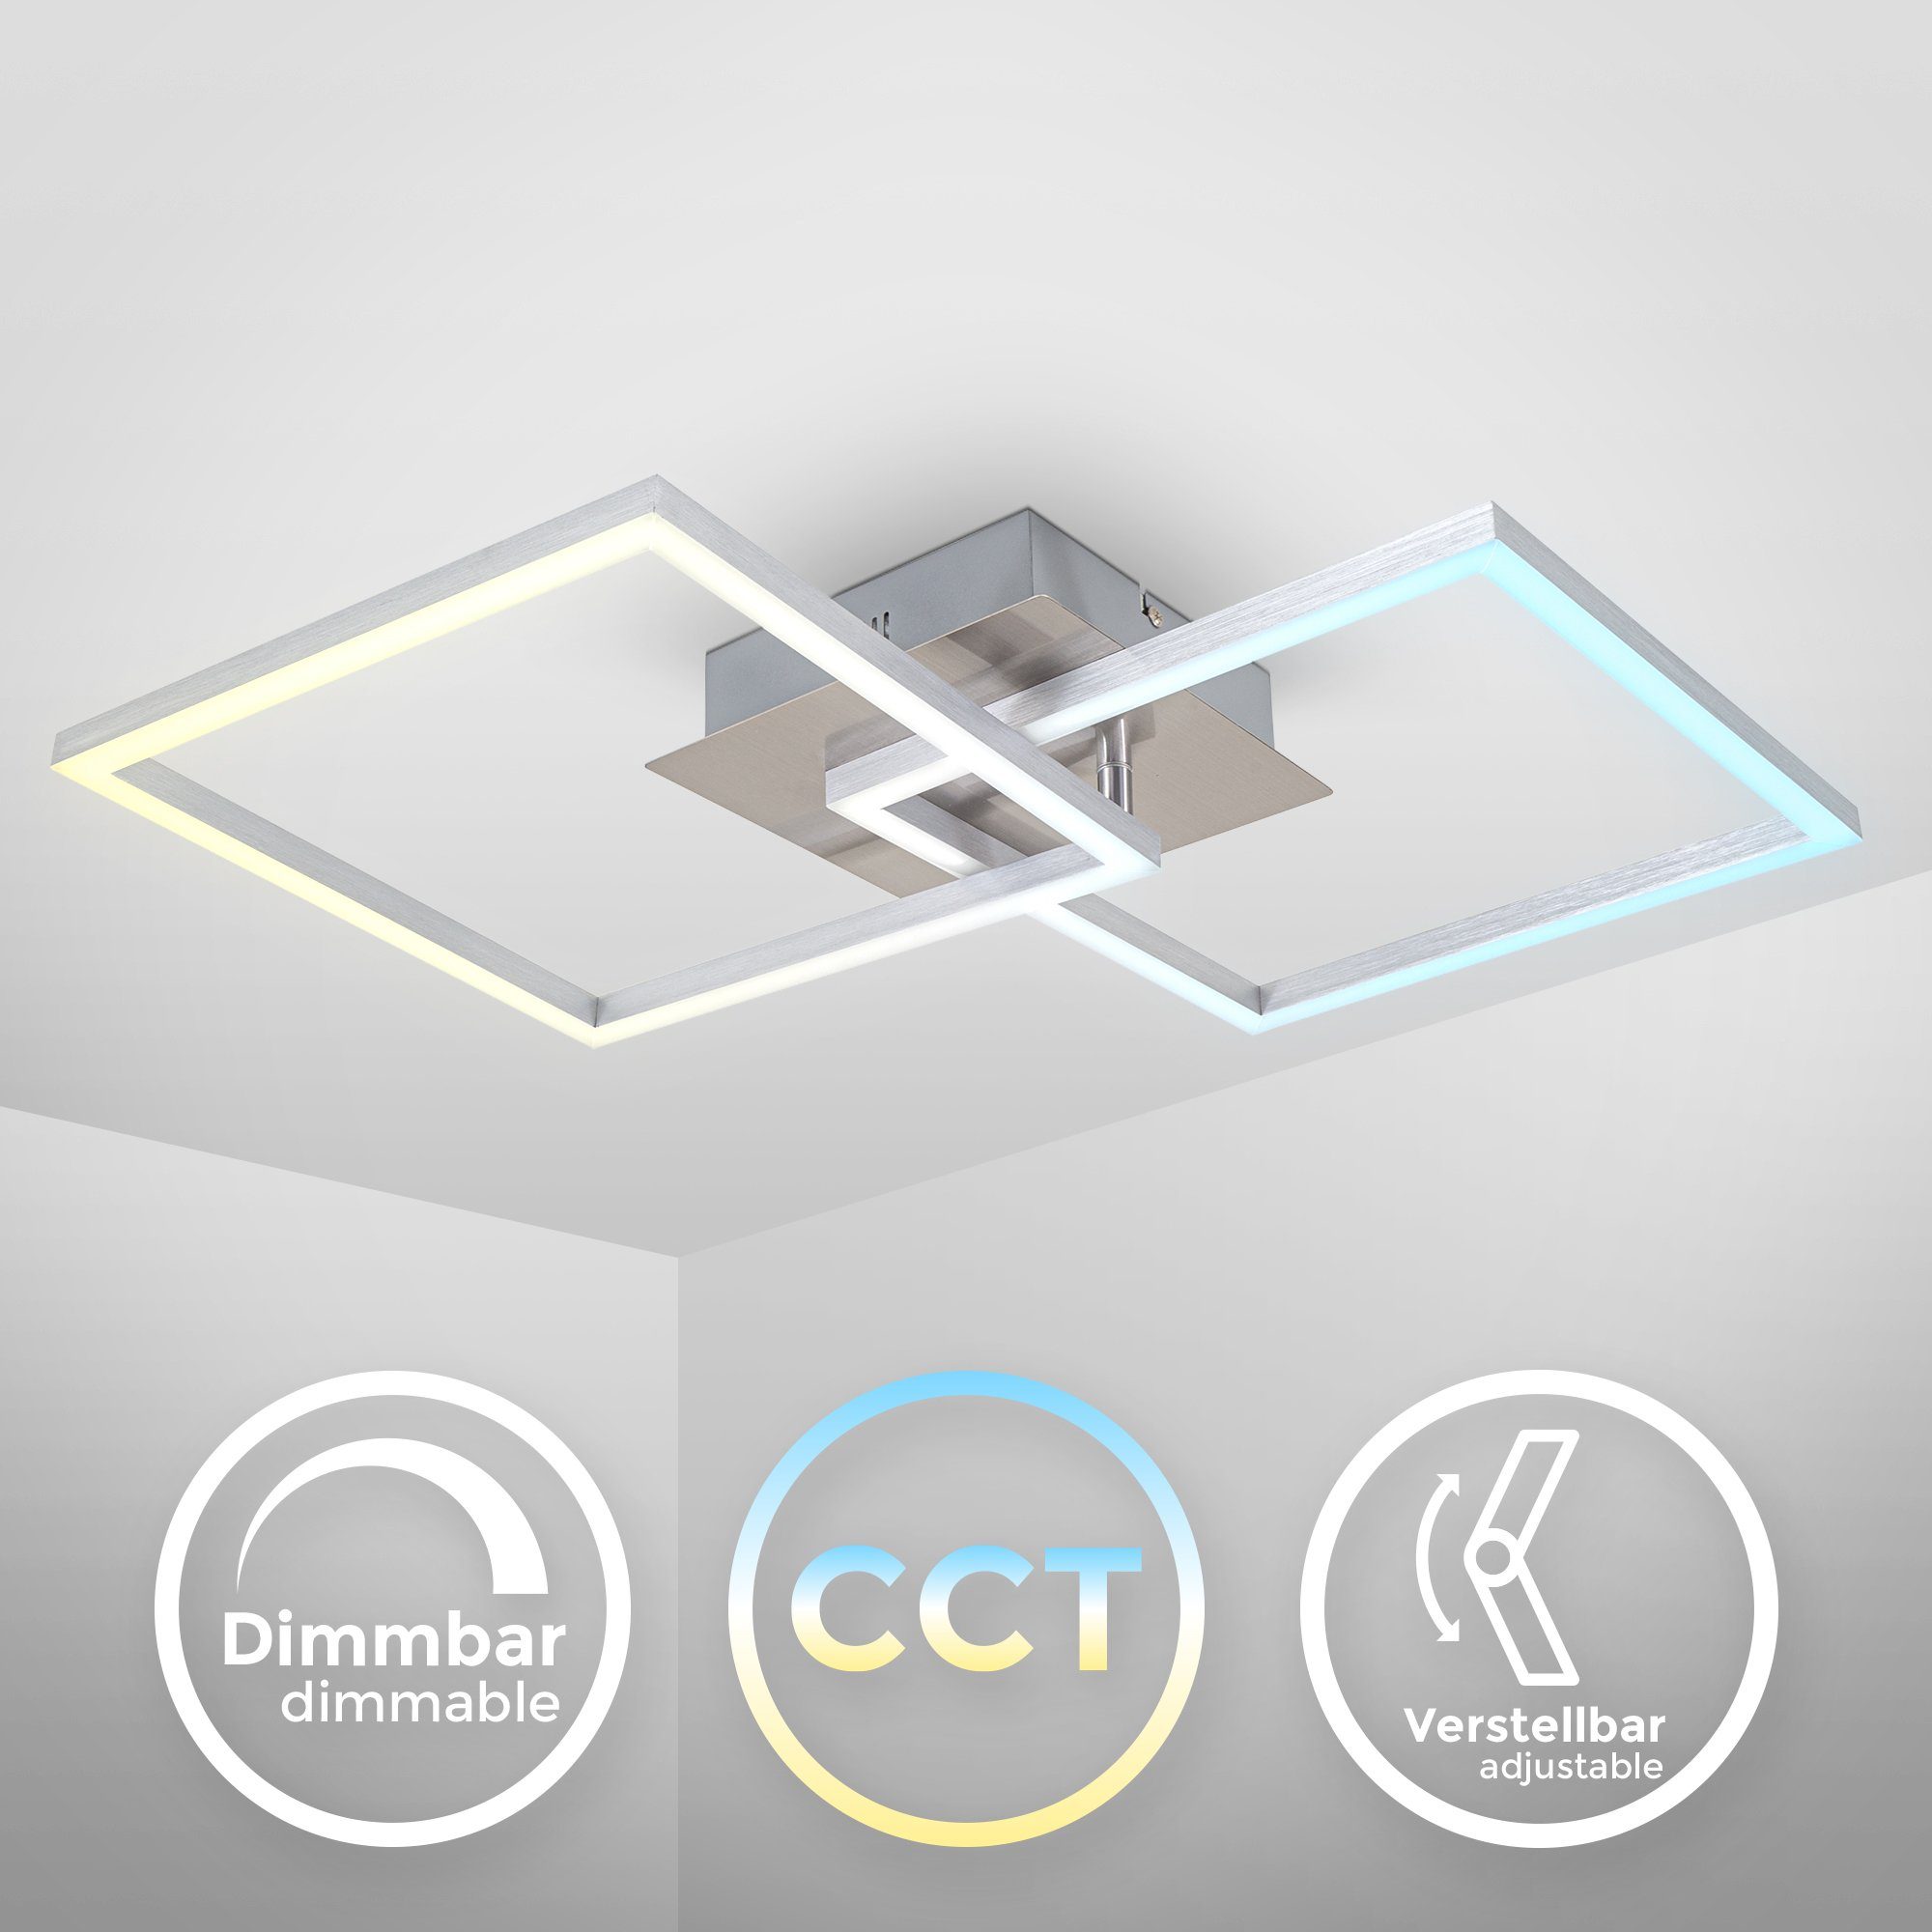 CCT fest Neutralweiß, integriert, B.K.Licht Fernbedienung schwenkbar, dimmbar, Kaltweiß, Warmweiß, Timer, LED Deckenleuchten, Farbtemperatursteuerung,